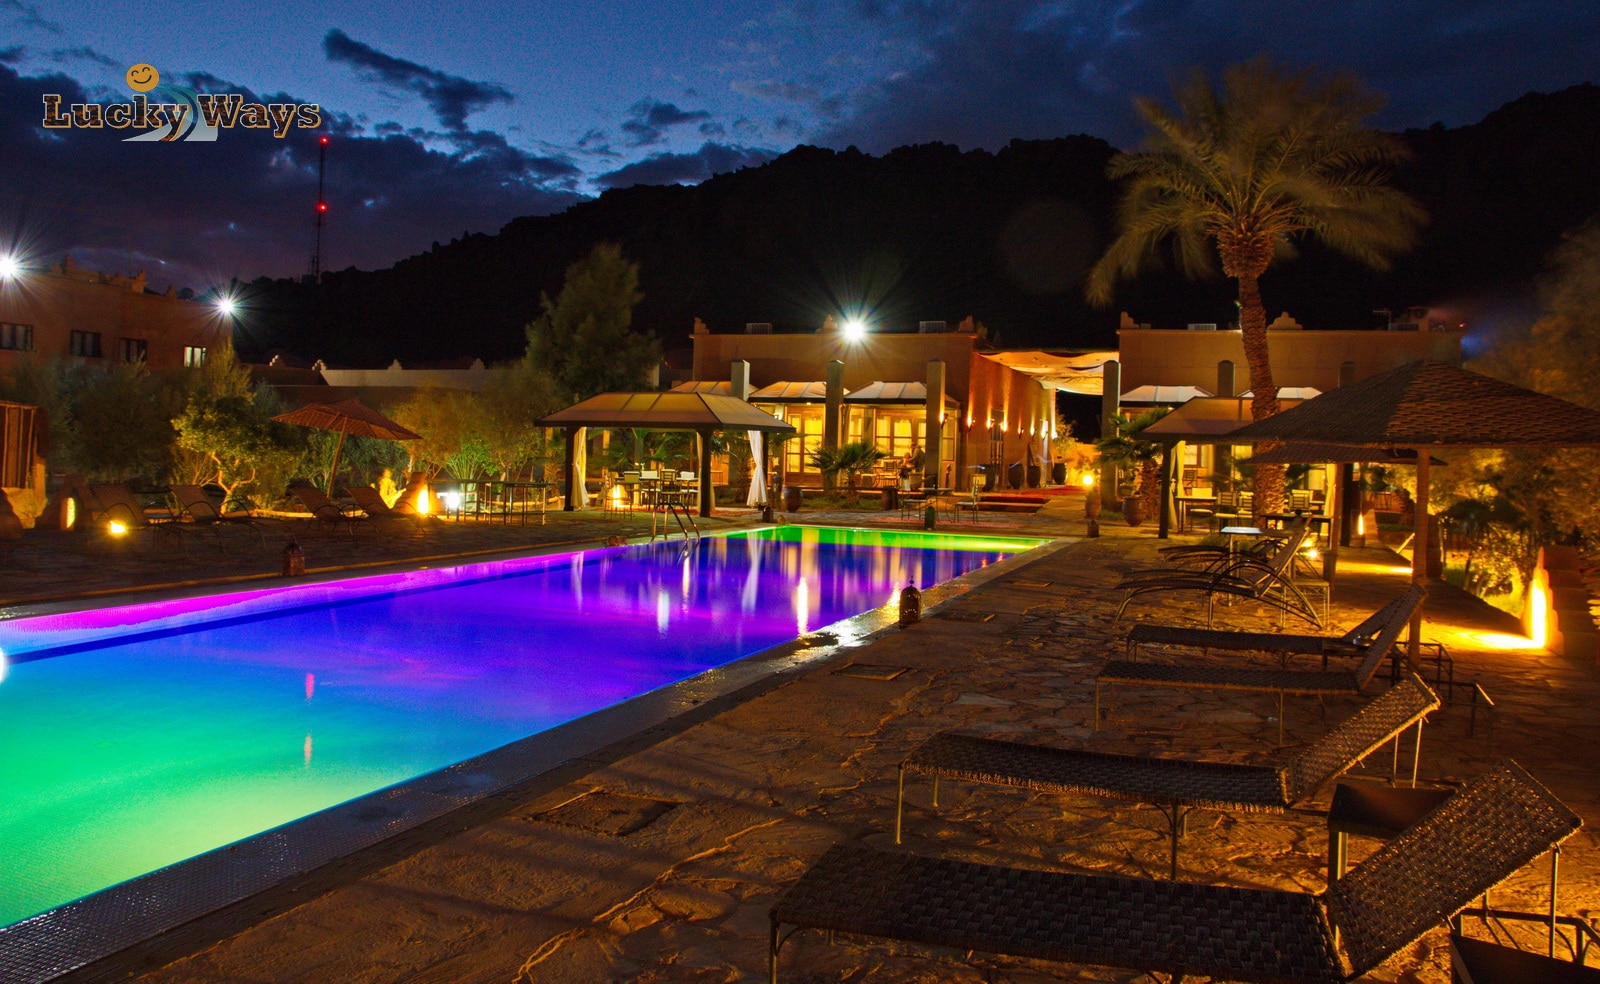 Bab Rimal Desert Hotel Foum Zguid Sahara Swimming Pool violett beleuchtet